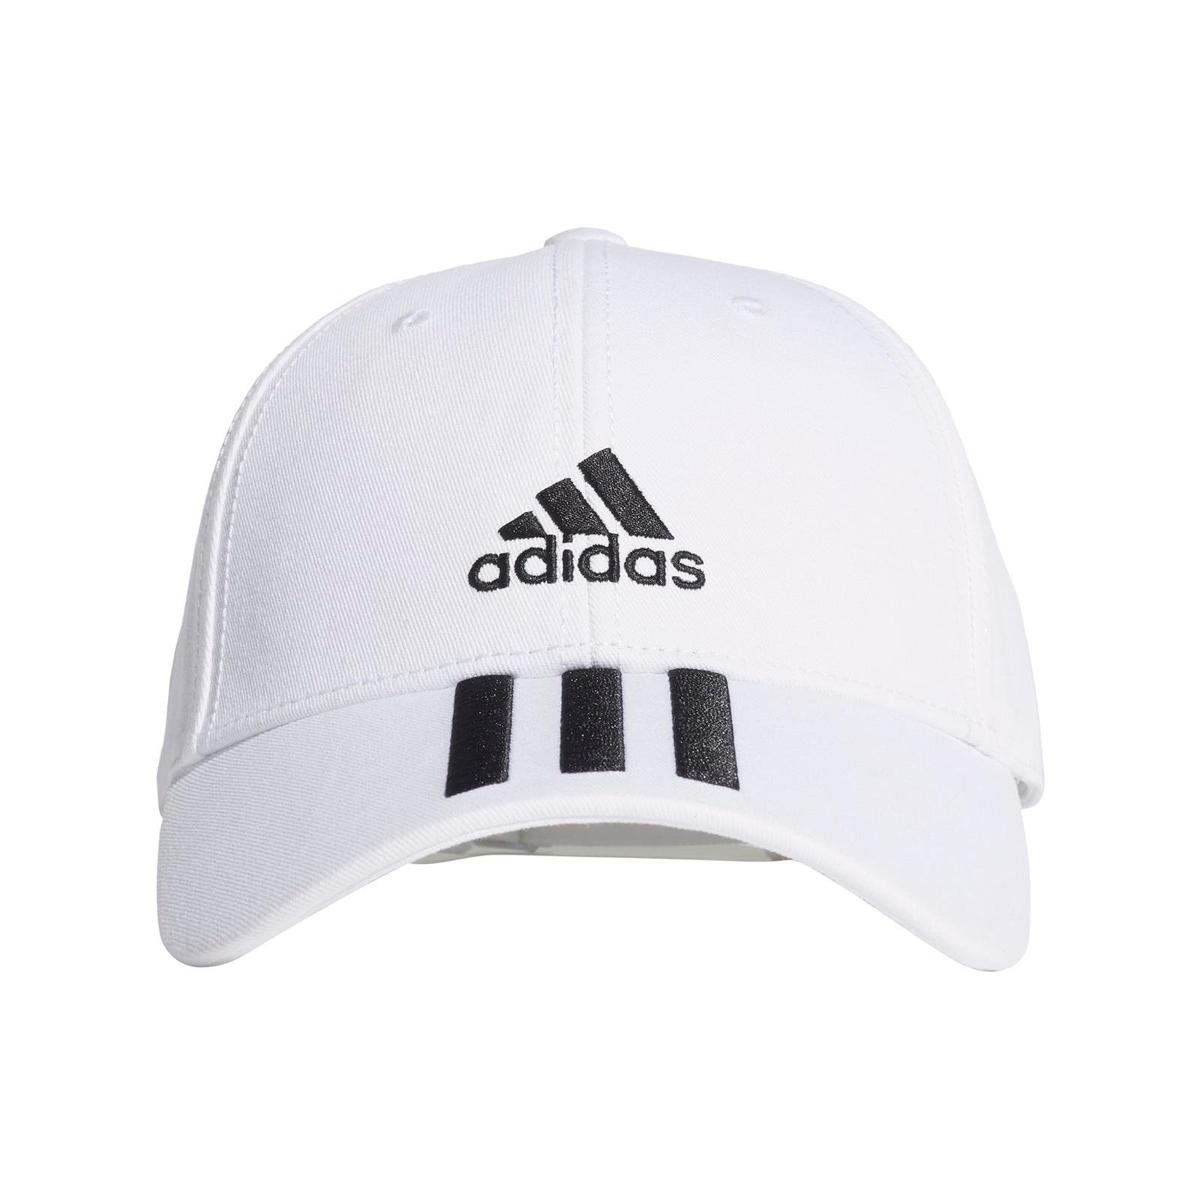 Adidas, Czapka, BBALL 3S CAP CT FQ5411, biały, rozmiar 56